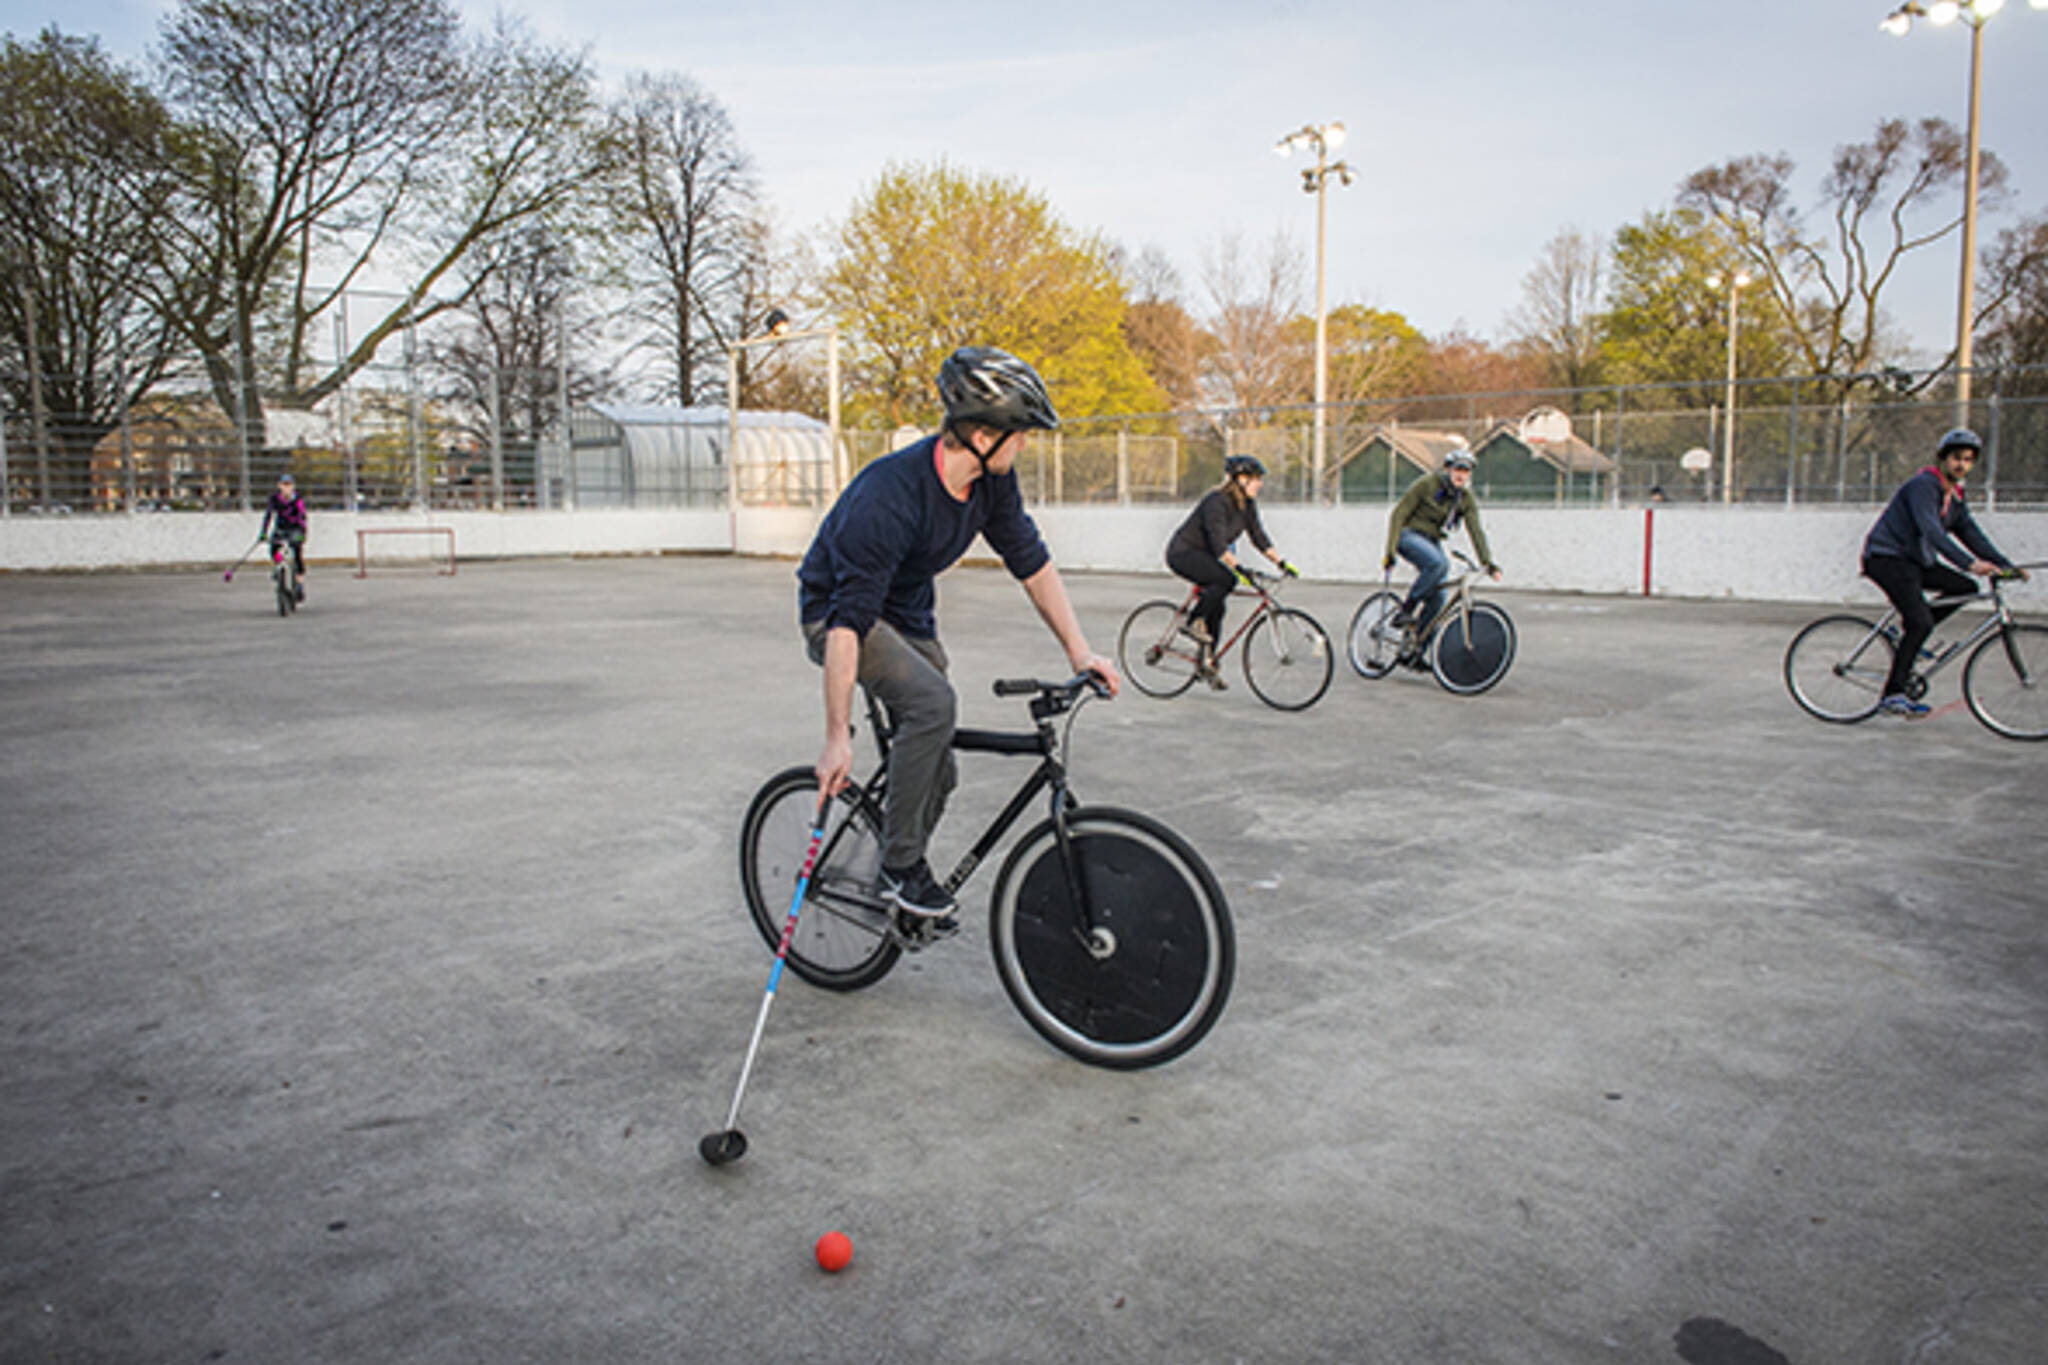 Bike Polo makes a big comeback in Toronto